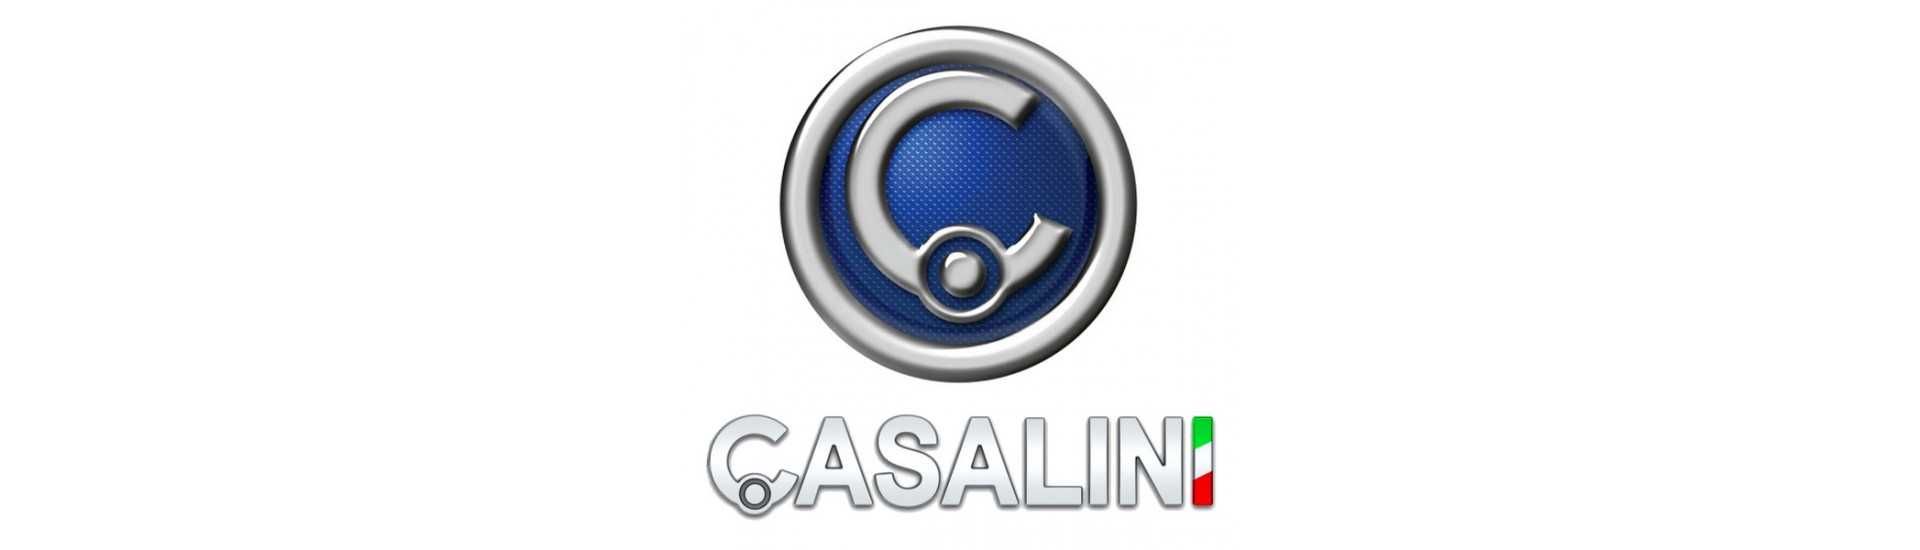 Completo concentrado en el mejor precio del coche sin permiso Casalini